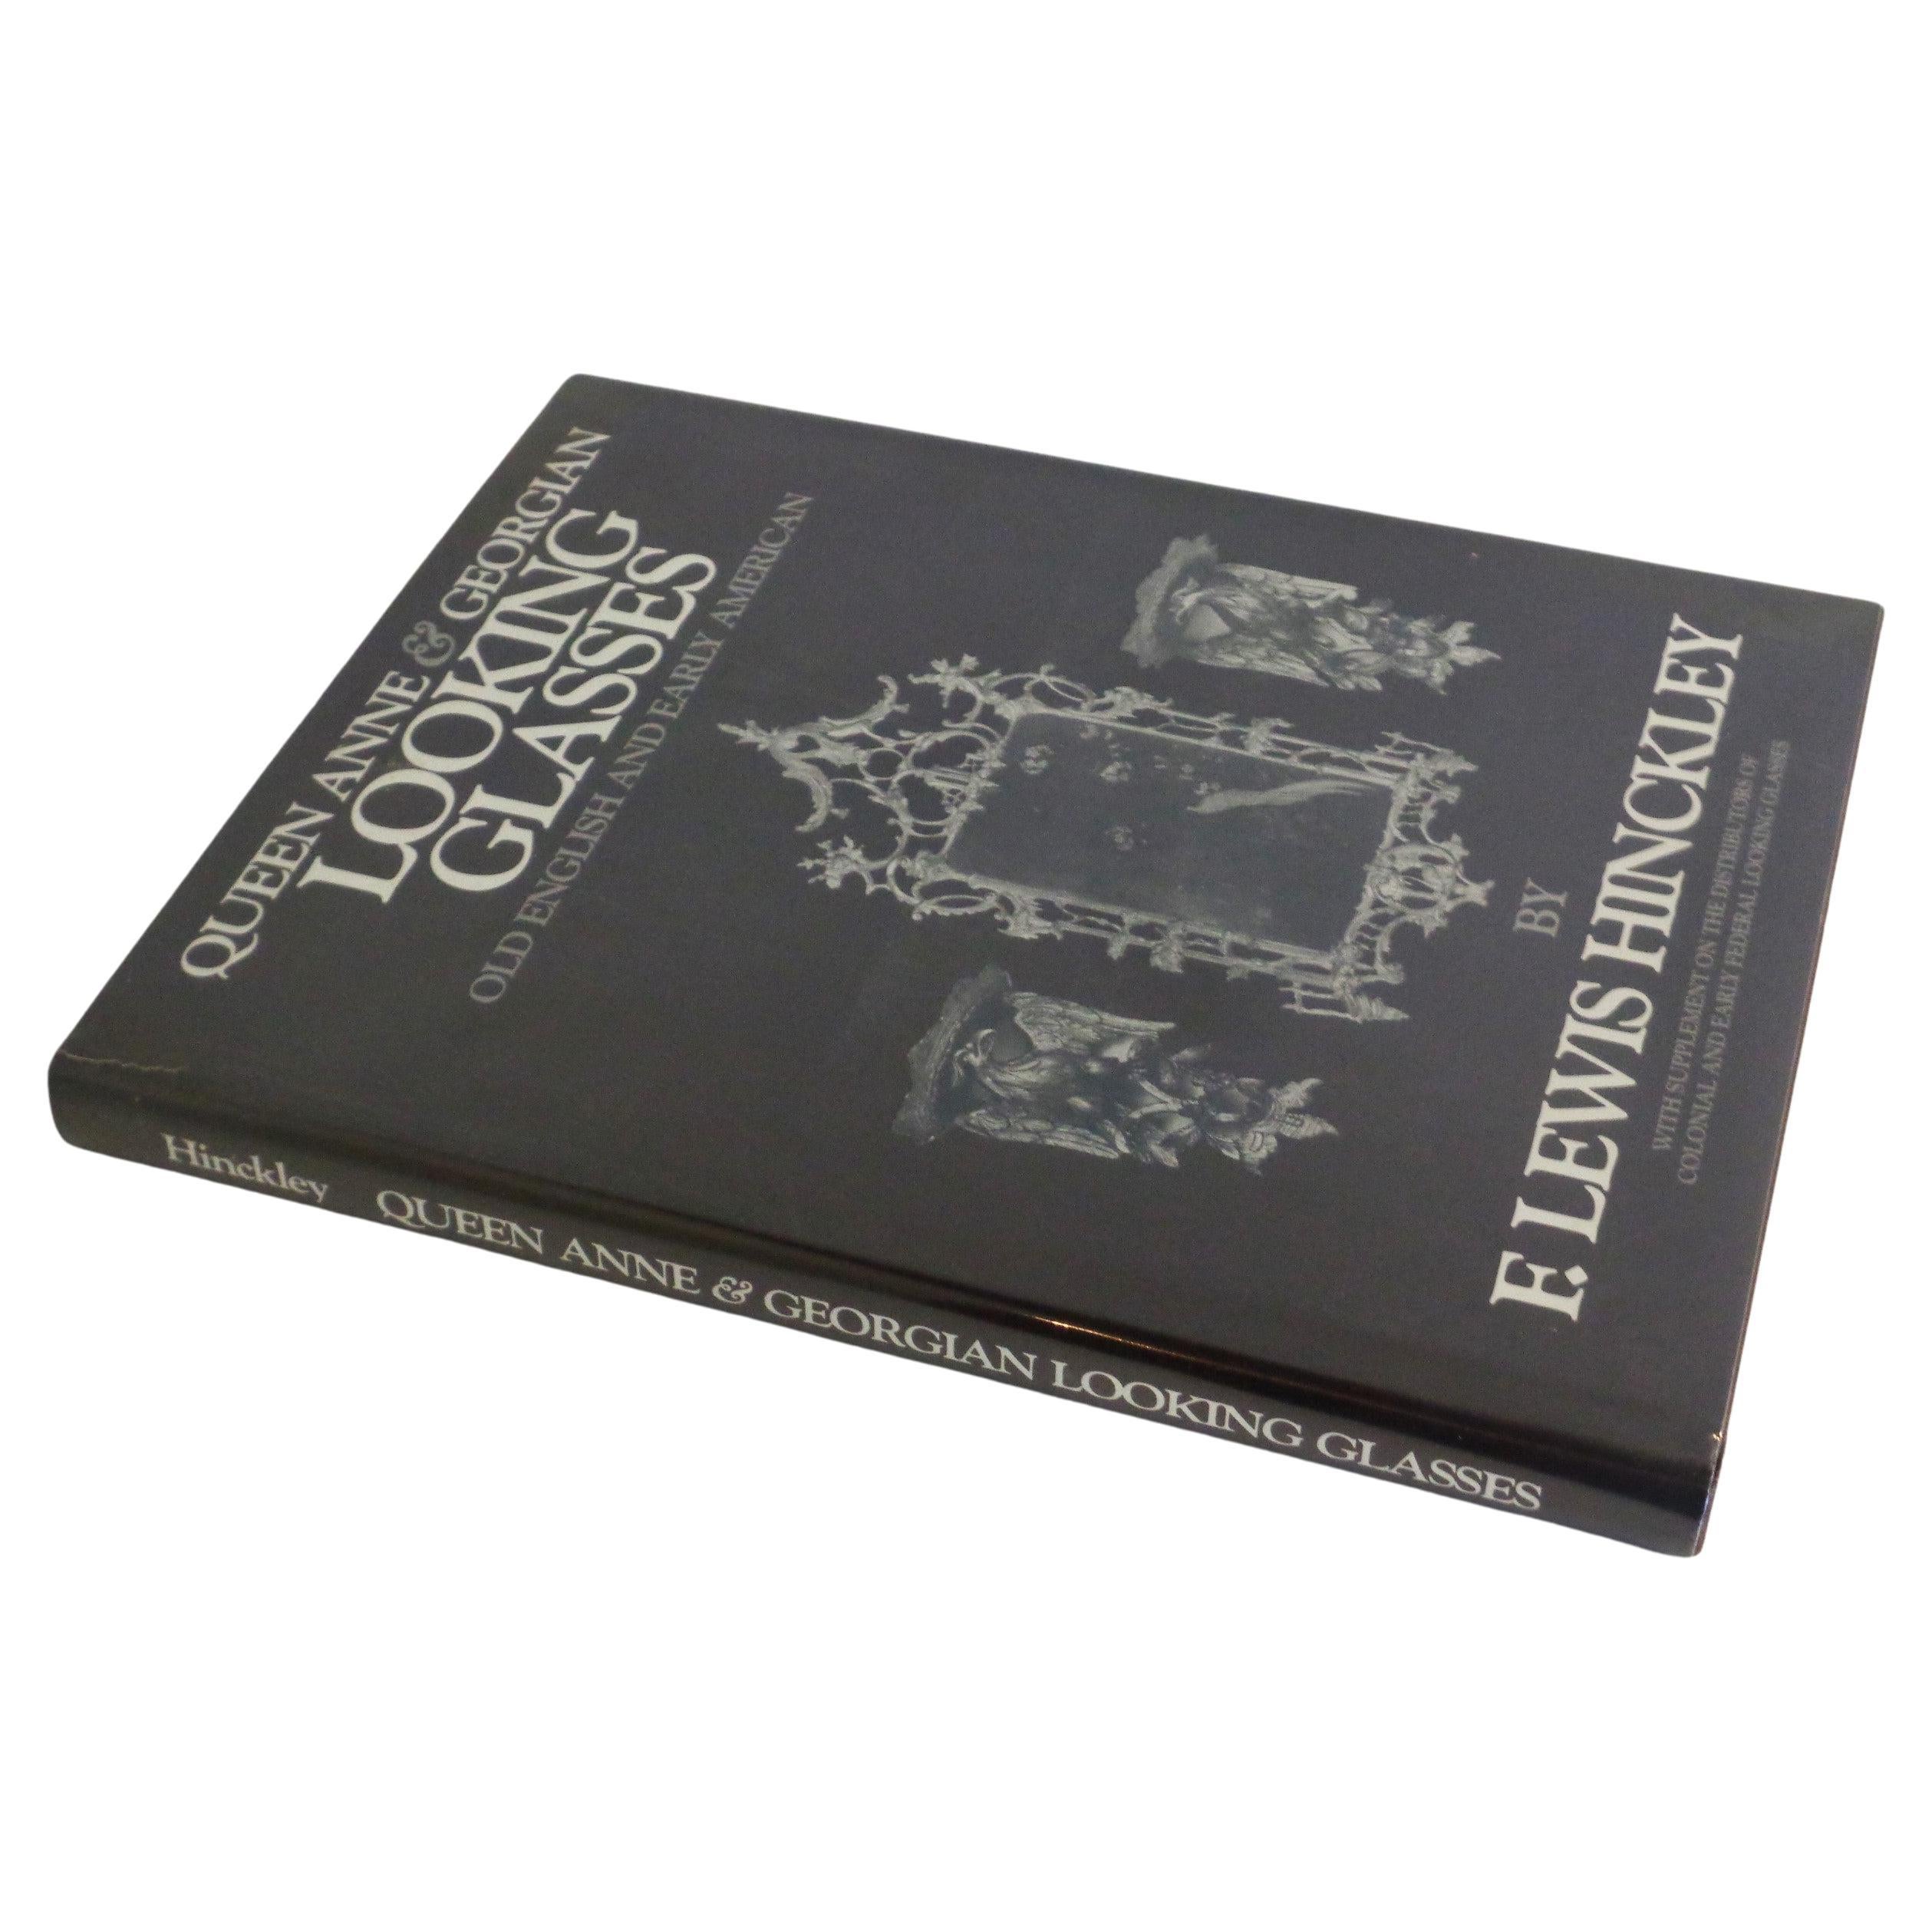 Verres de style Queen Anne et Géorgien - Hinckley - 1990 Tauris - 1ère édition en vente 12